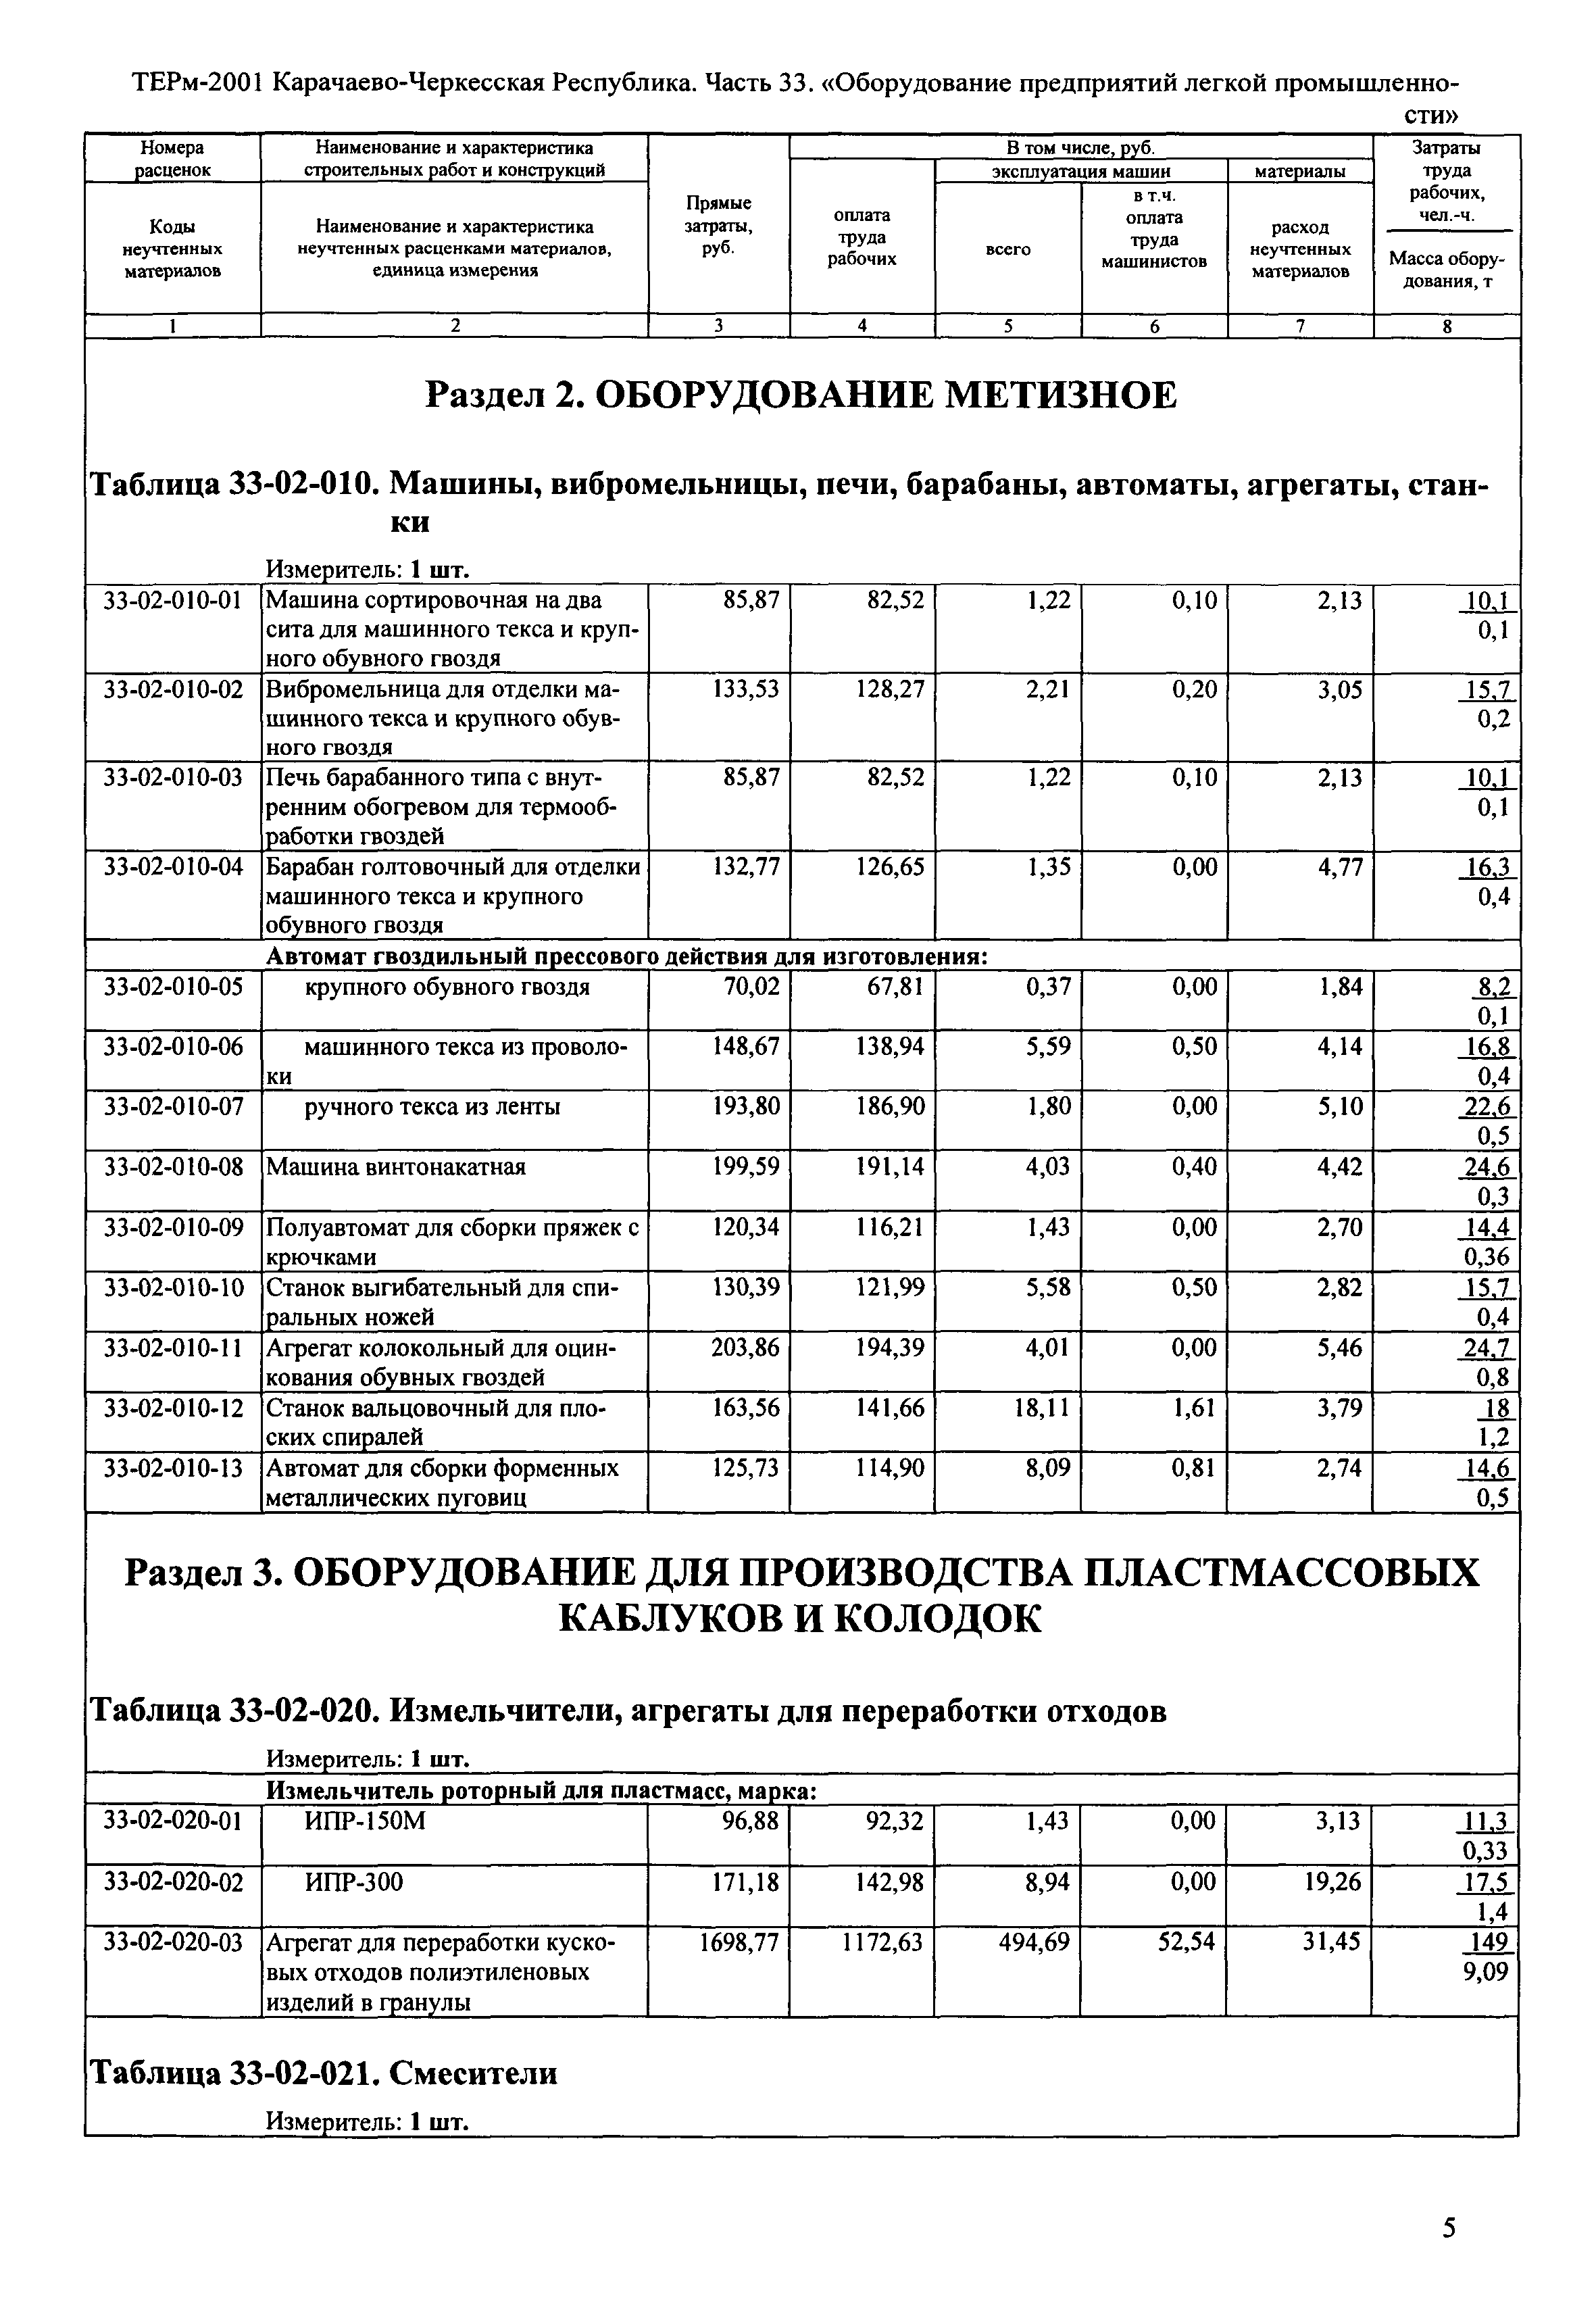 ТЕРм Карачаево-Черкесская Республика 33-2001